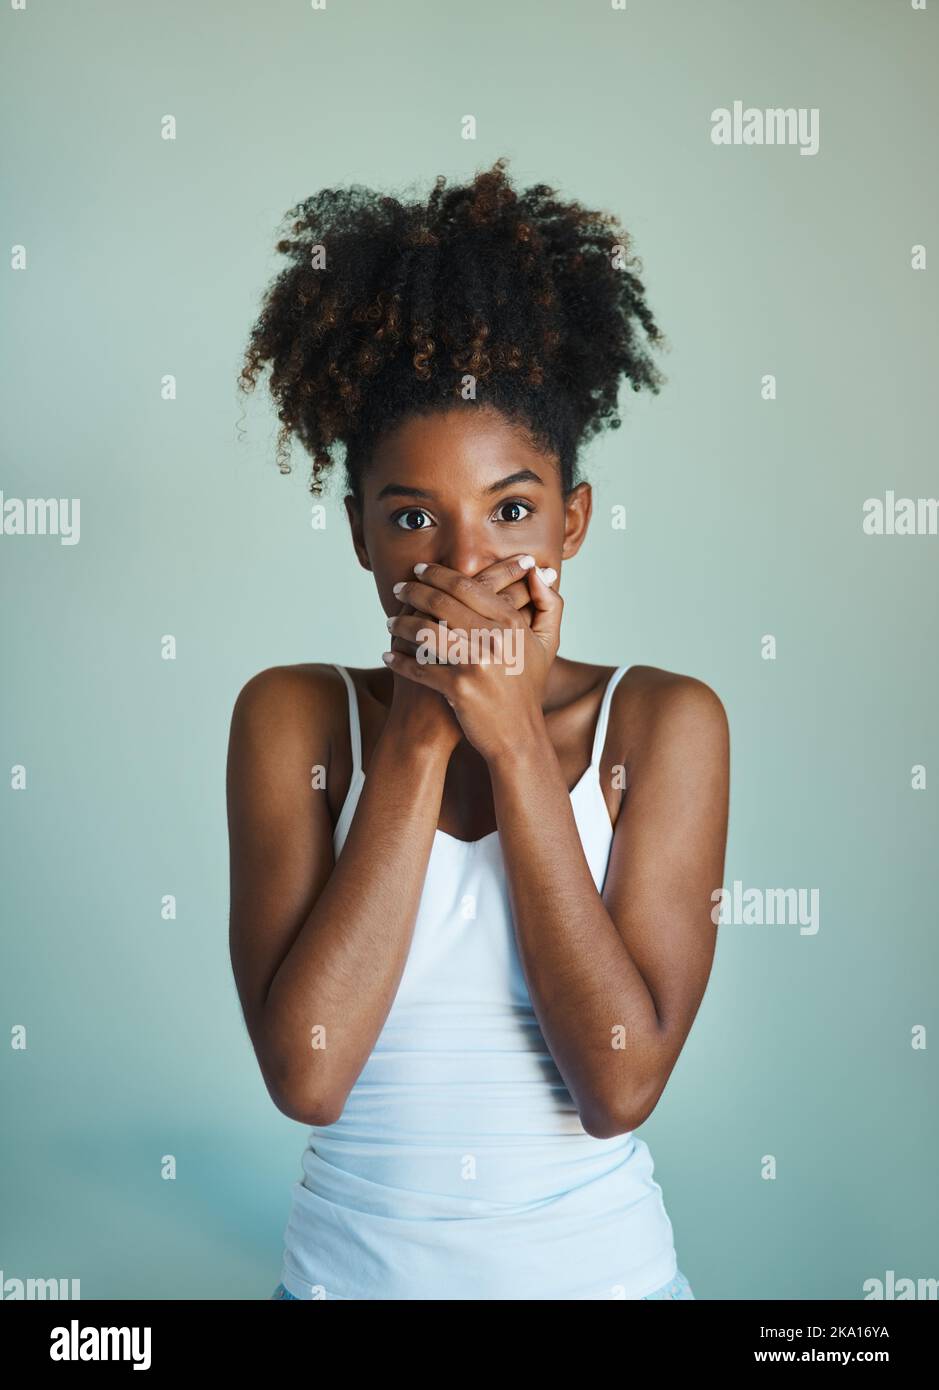 Wenn Sie nichts nettes zu sagen haben, Sei still. Studioaufnahme einer schönen, frisch gesichtigen jungen Frau, die vor grünem Hintergrund posiert. Stockfoto